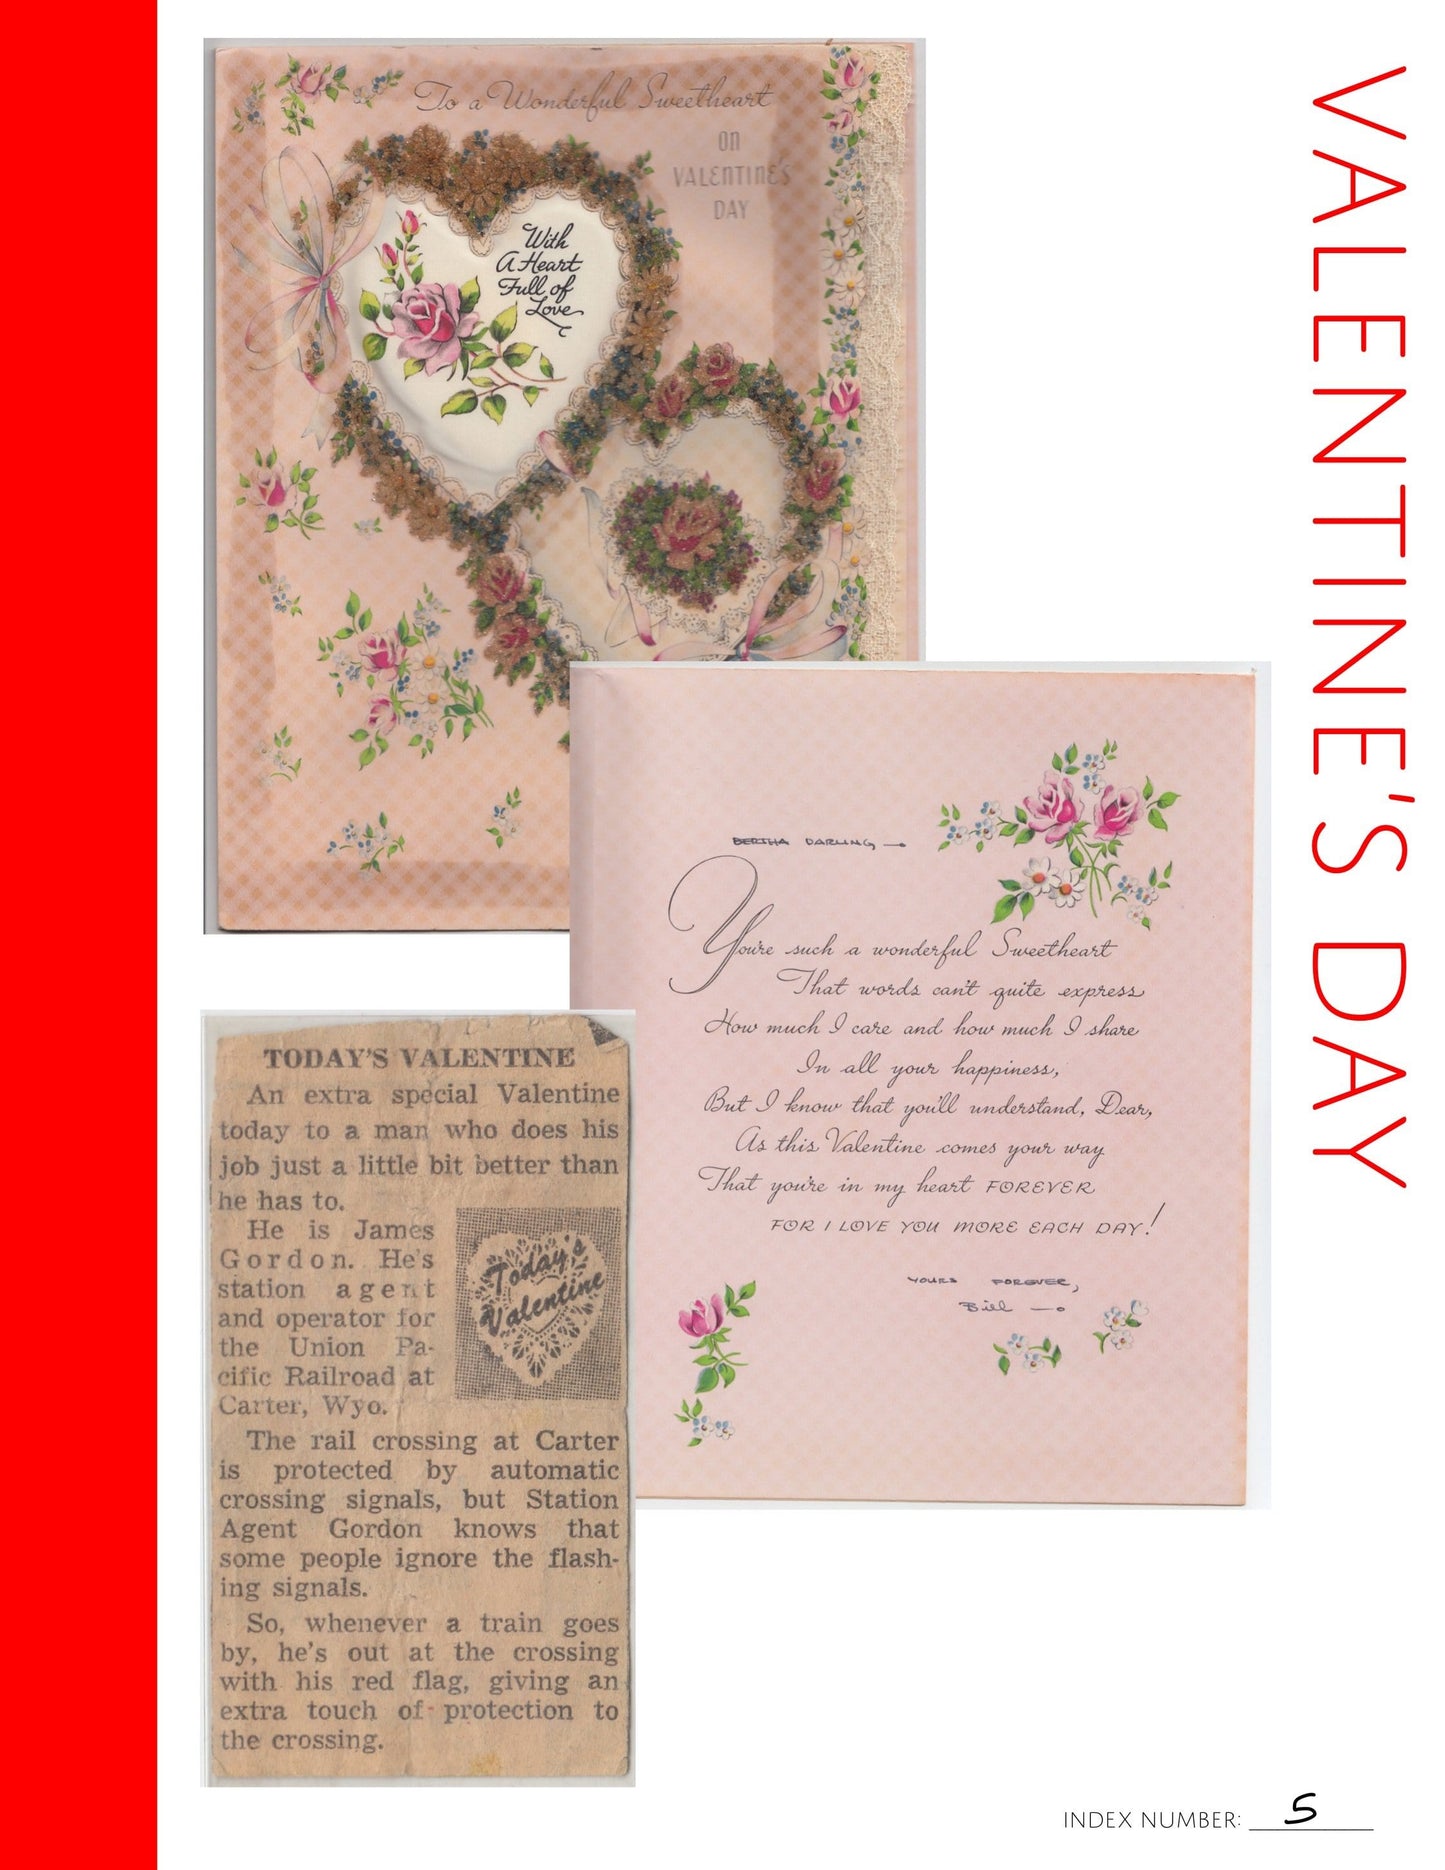 Valentine's Day: Printable Genealogy Form (Digital Download)